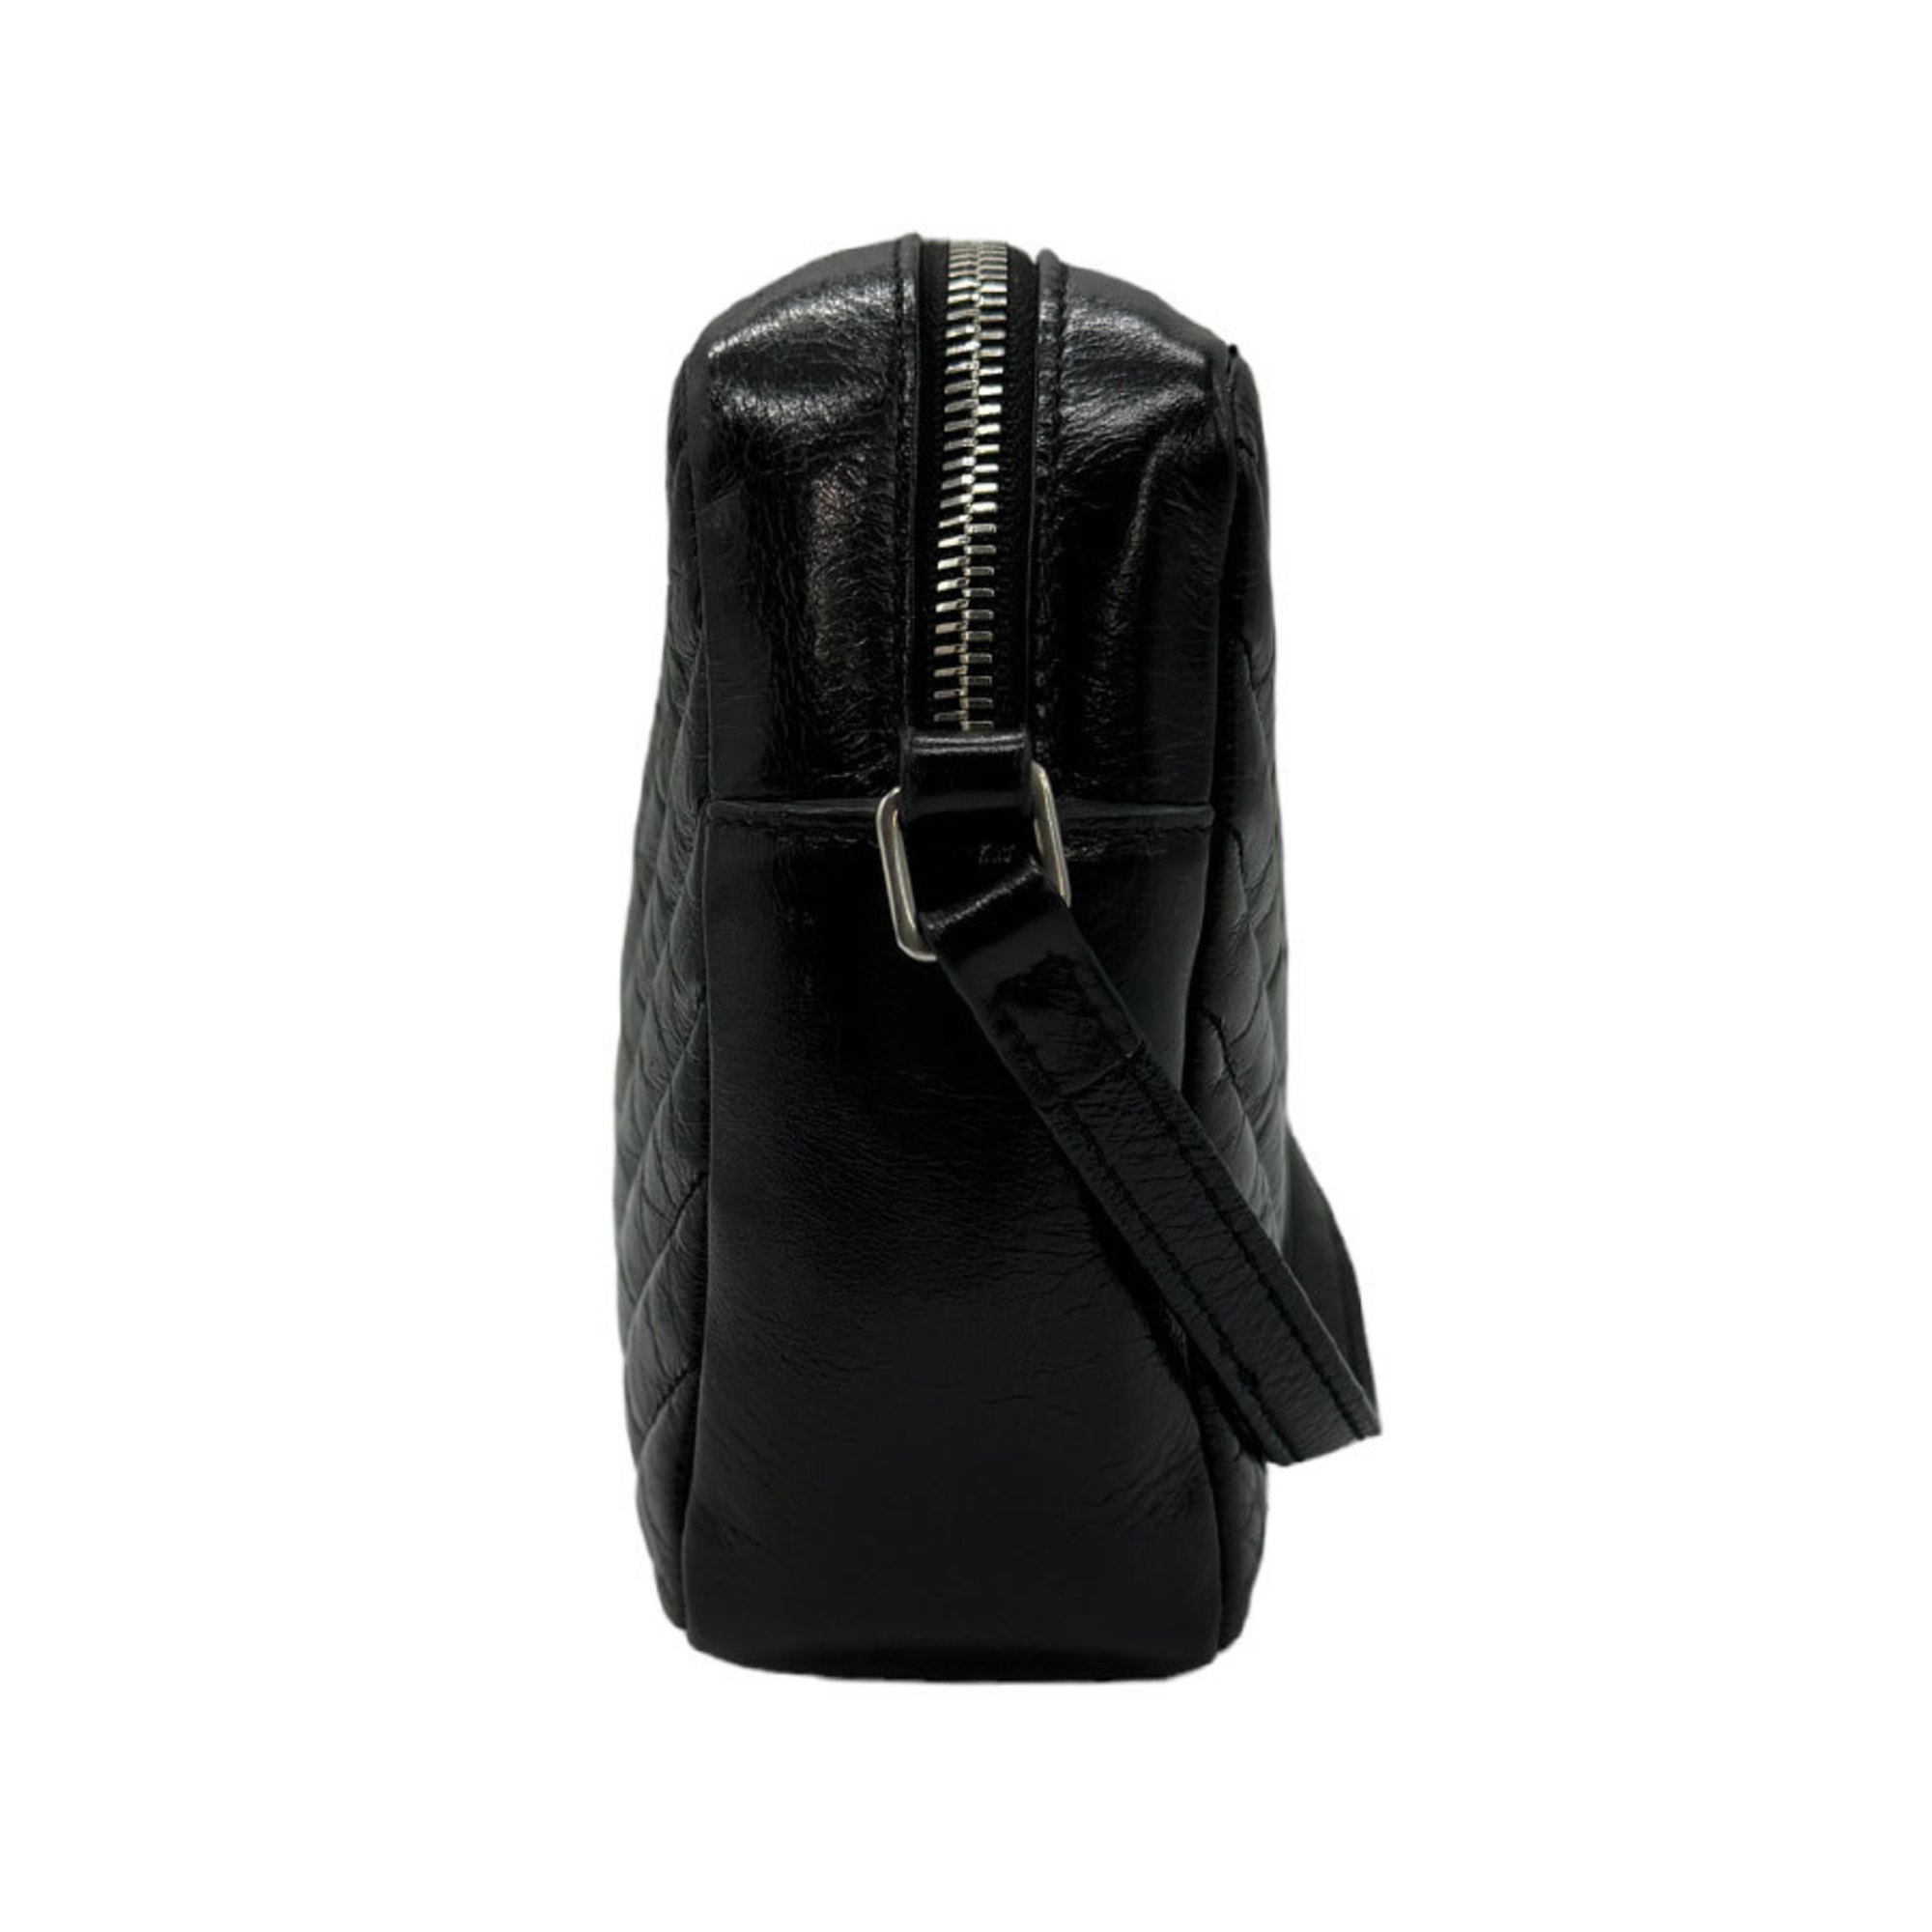 Saint Laurent shoulder bag, leather, black, women's, 468537 z0661